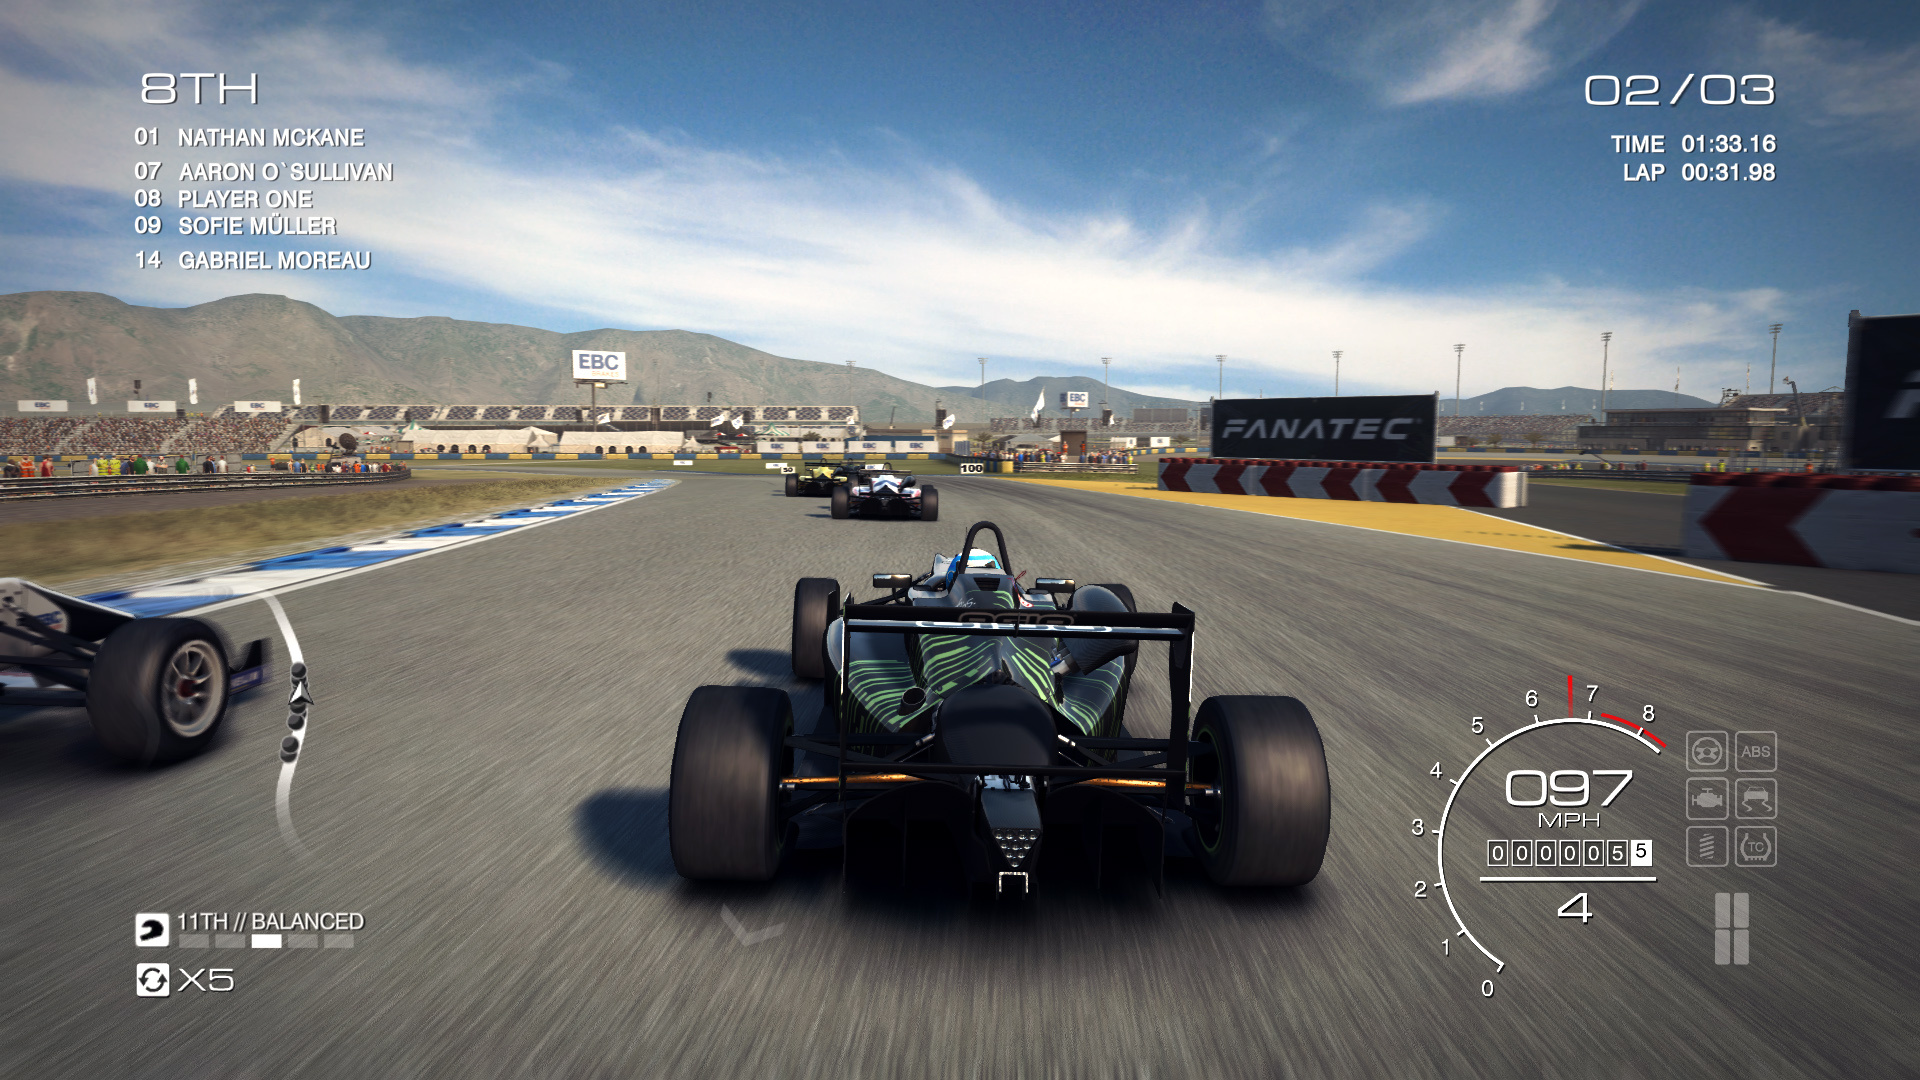 pixel 3xl grid autosport images